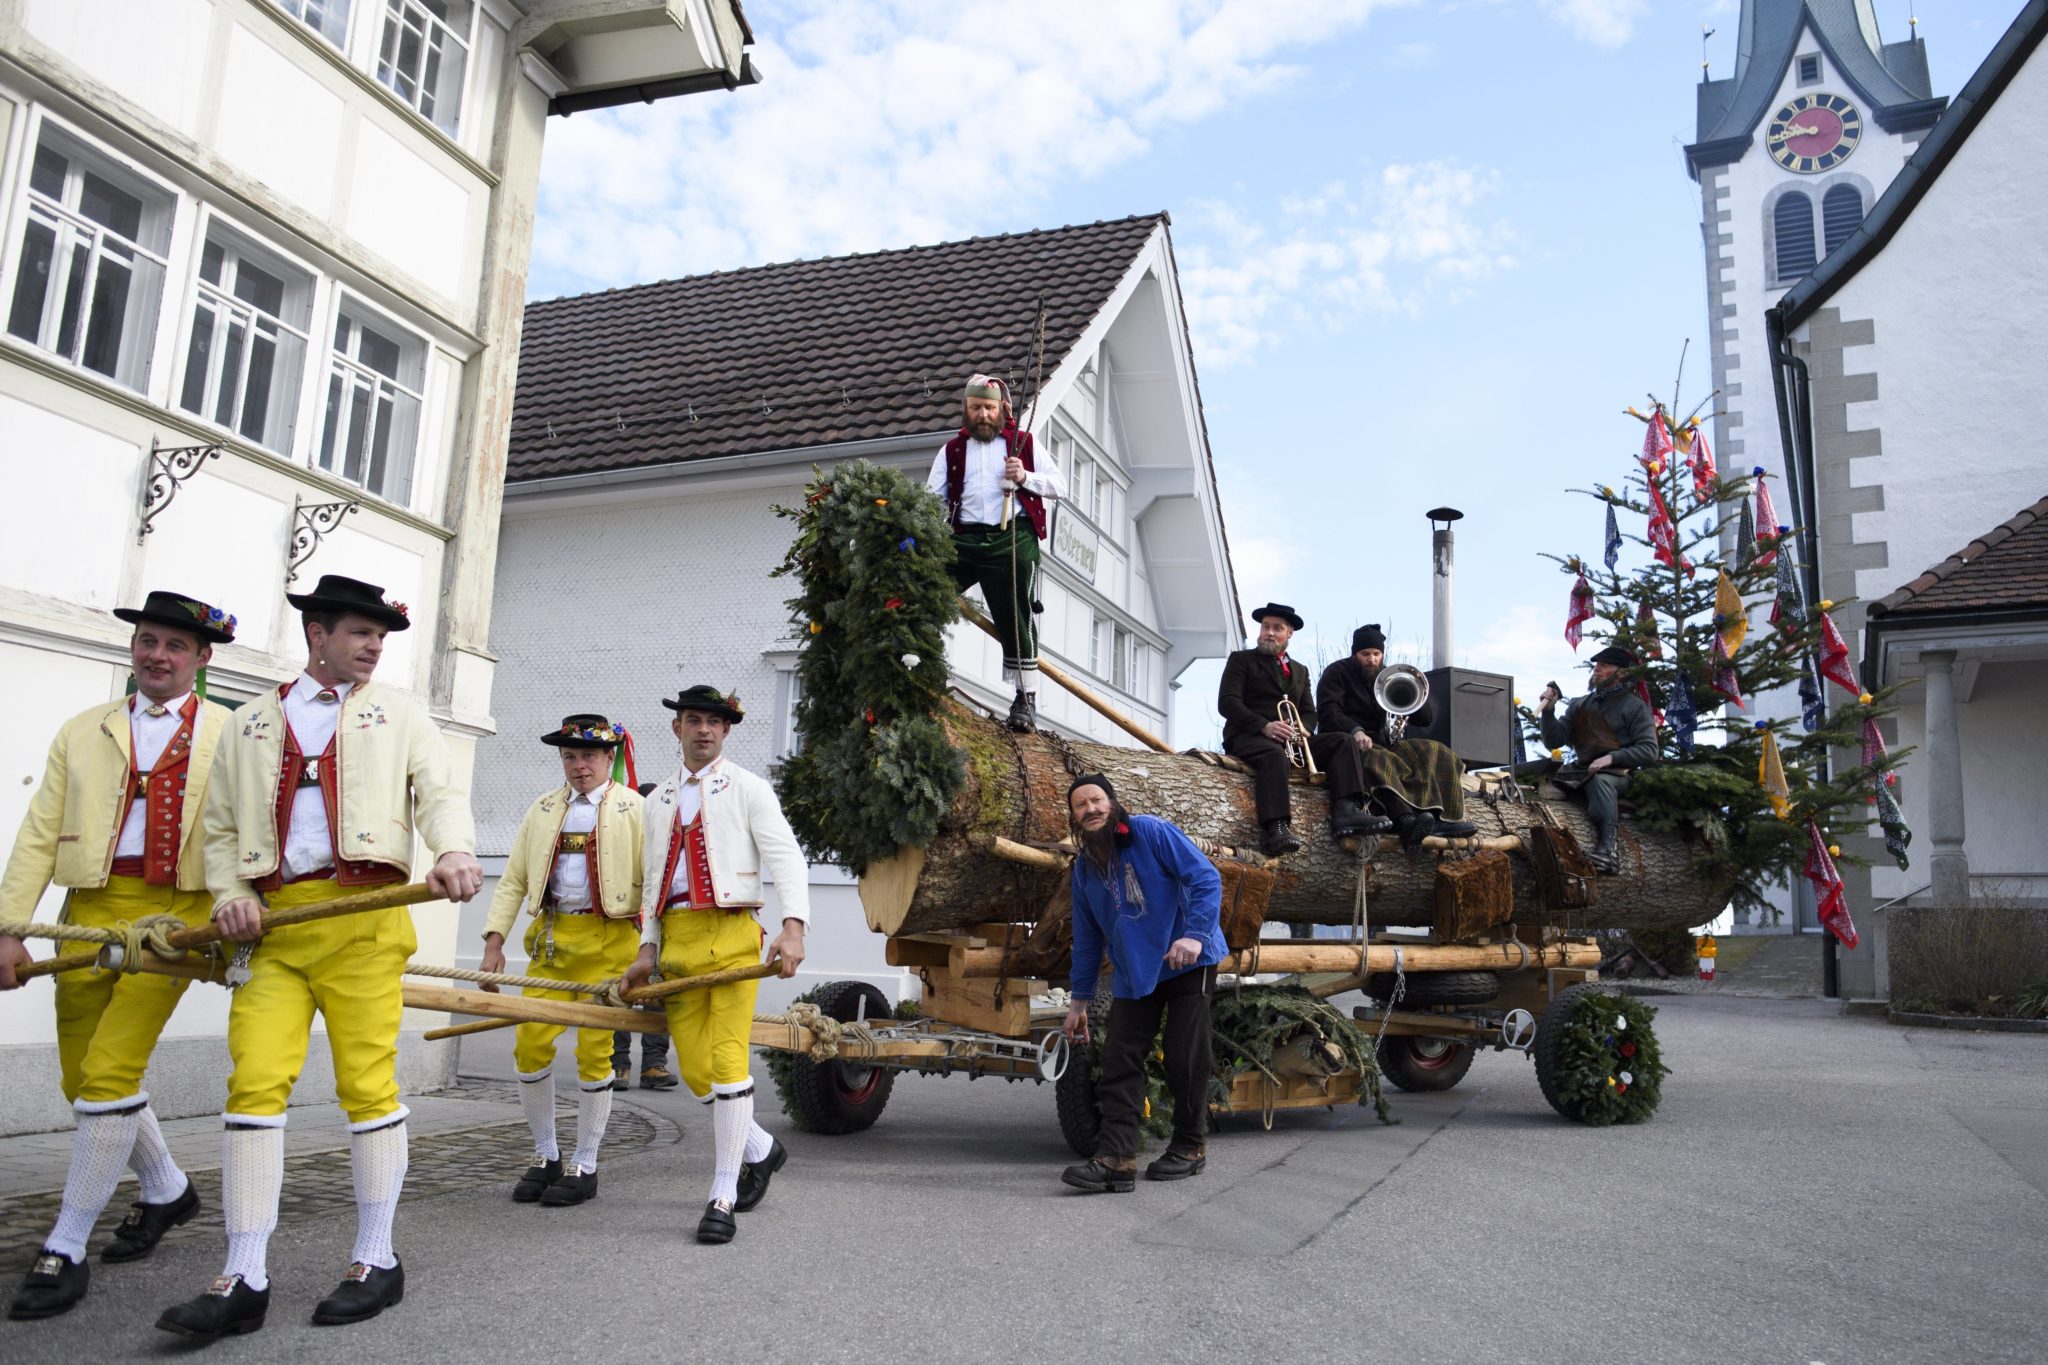 Szwajcaria: tradycyjny, karnawałowy przemarsz w Stein (foto. PAP/EPA/GIAN EHRENZELLER)